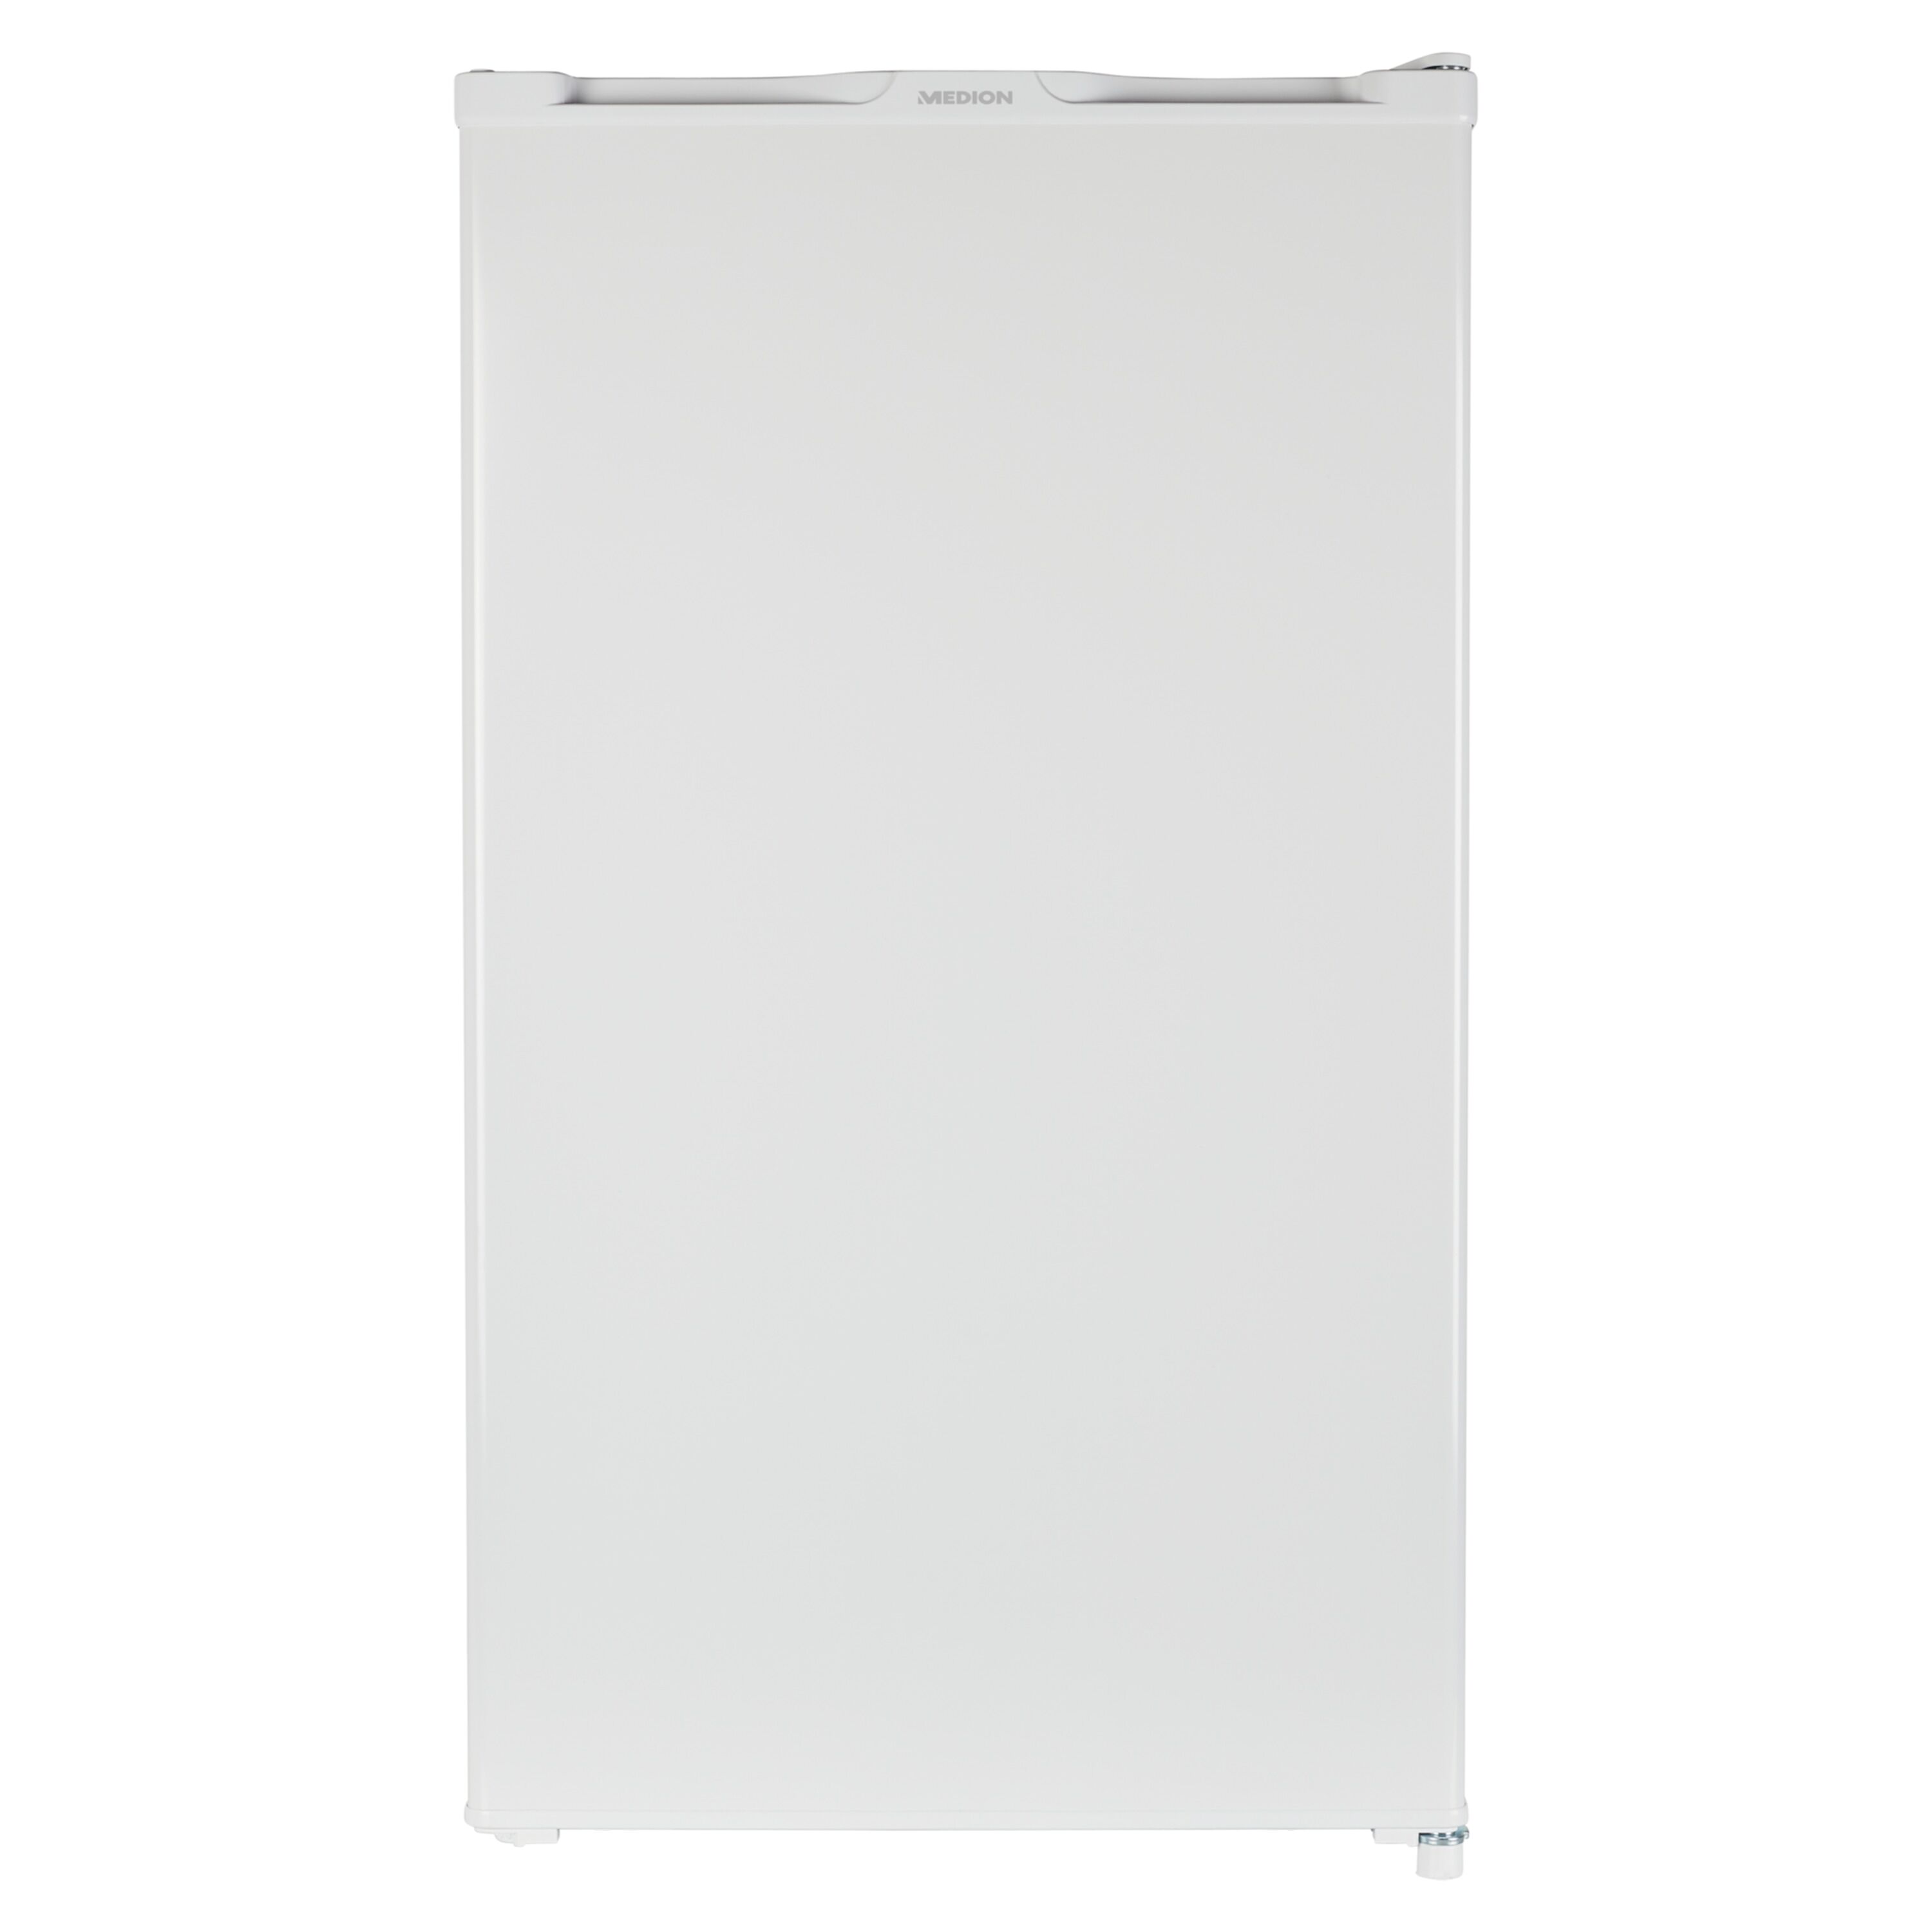 MEDION MEDION® Réfrigérateur avec compartiment à glaçons MD 37305 capacité nette totale de 93 L (compartiment réfrigérateur 83 L et compartiment à g